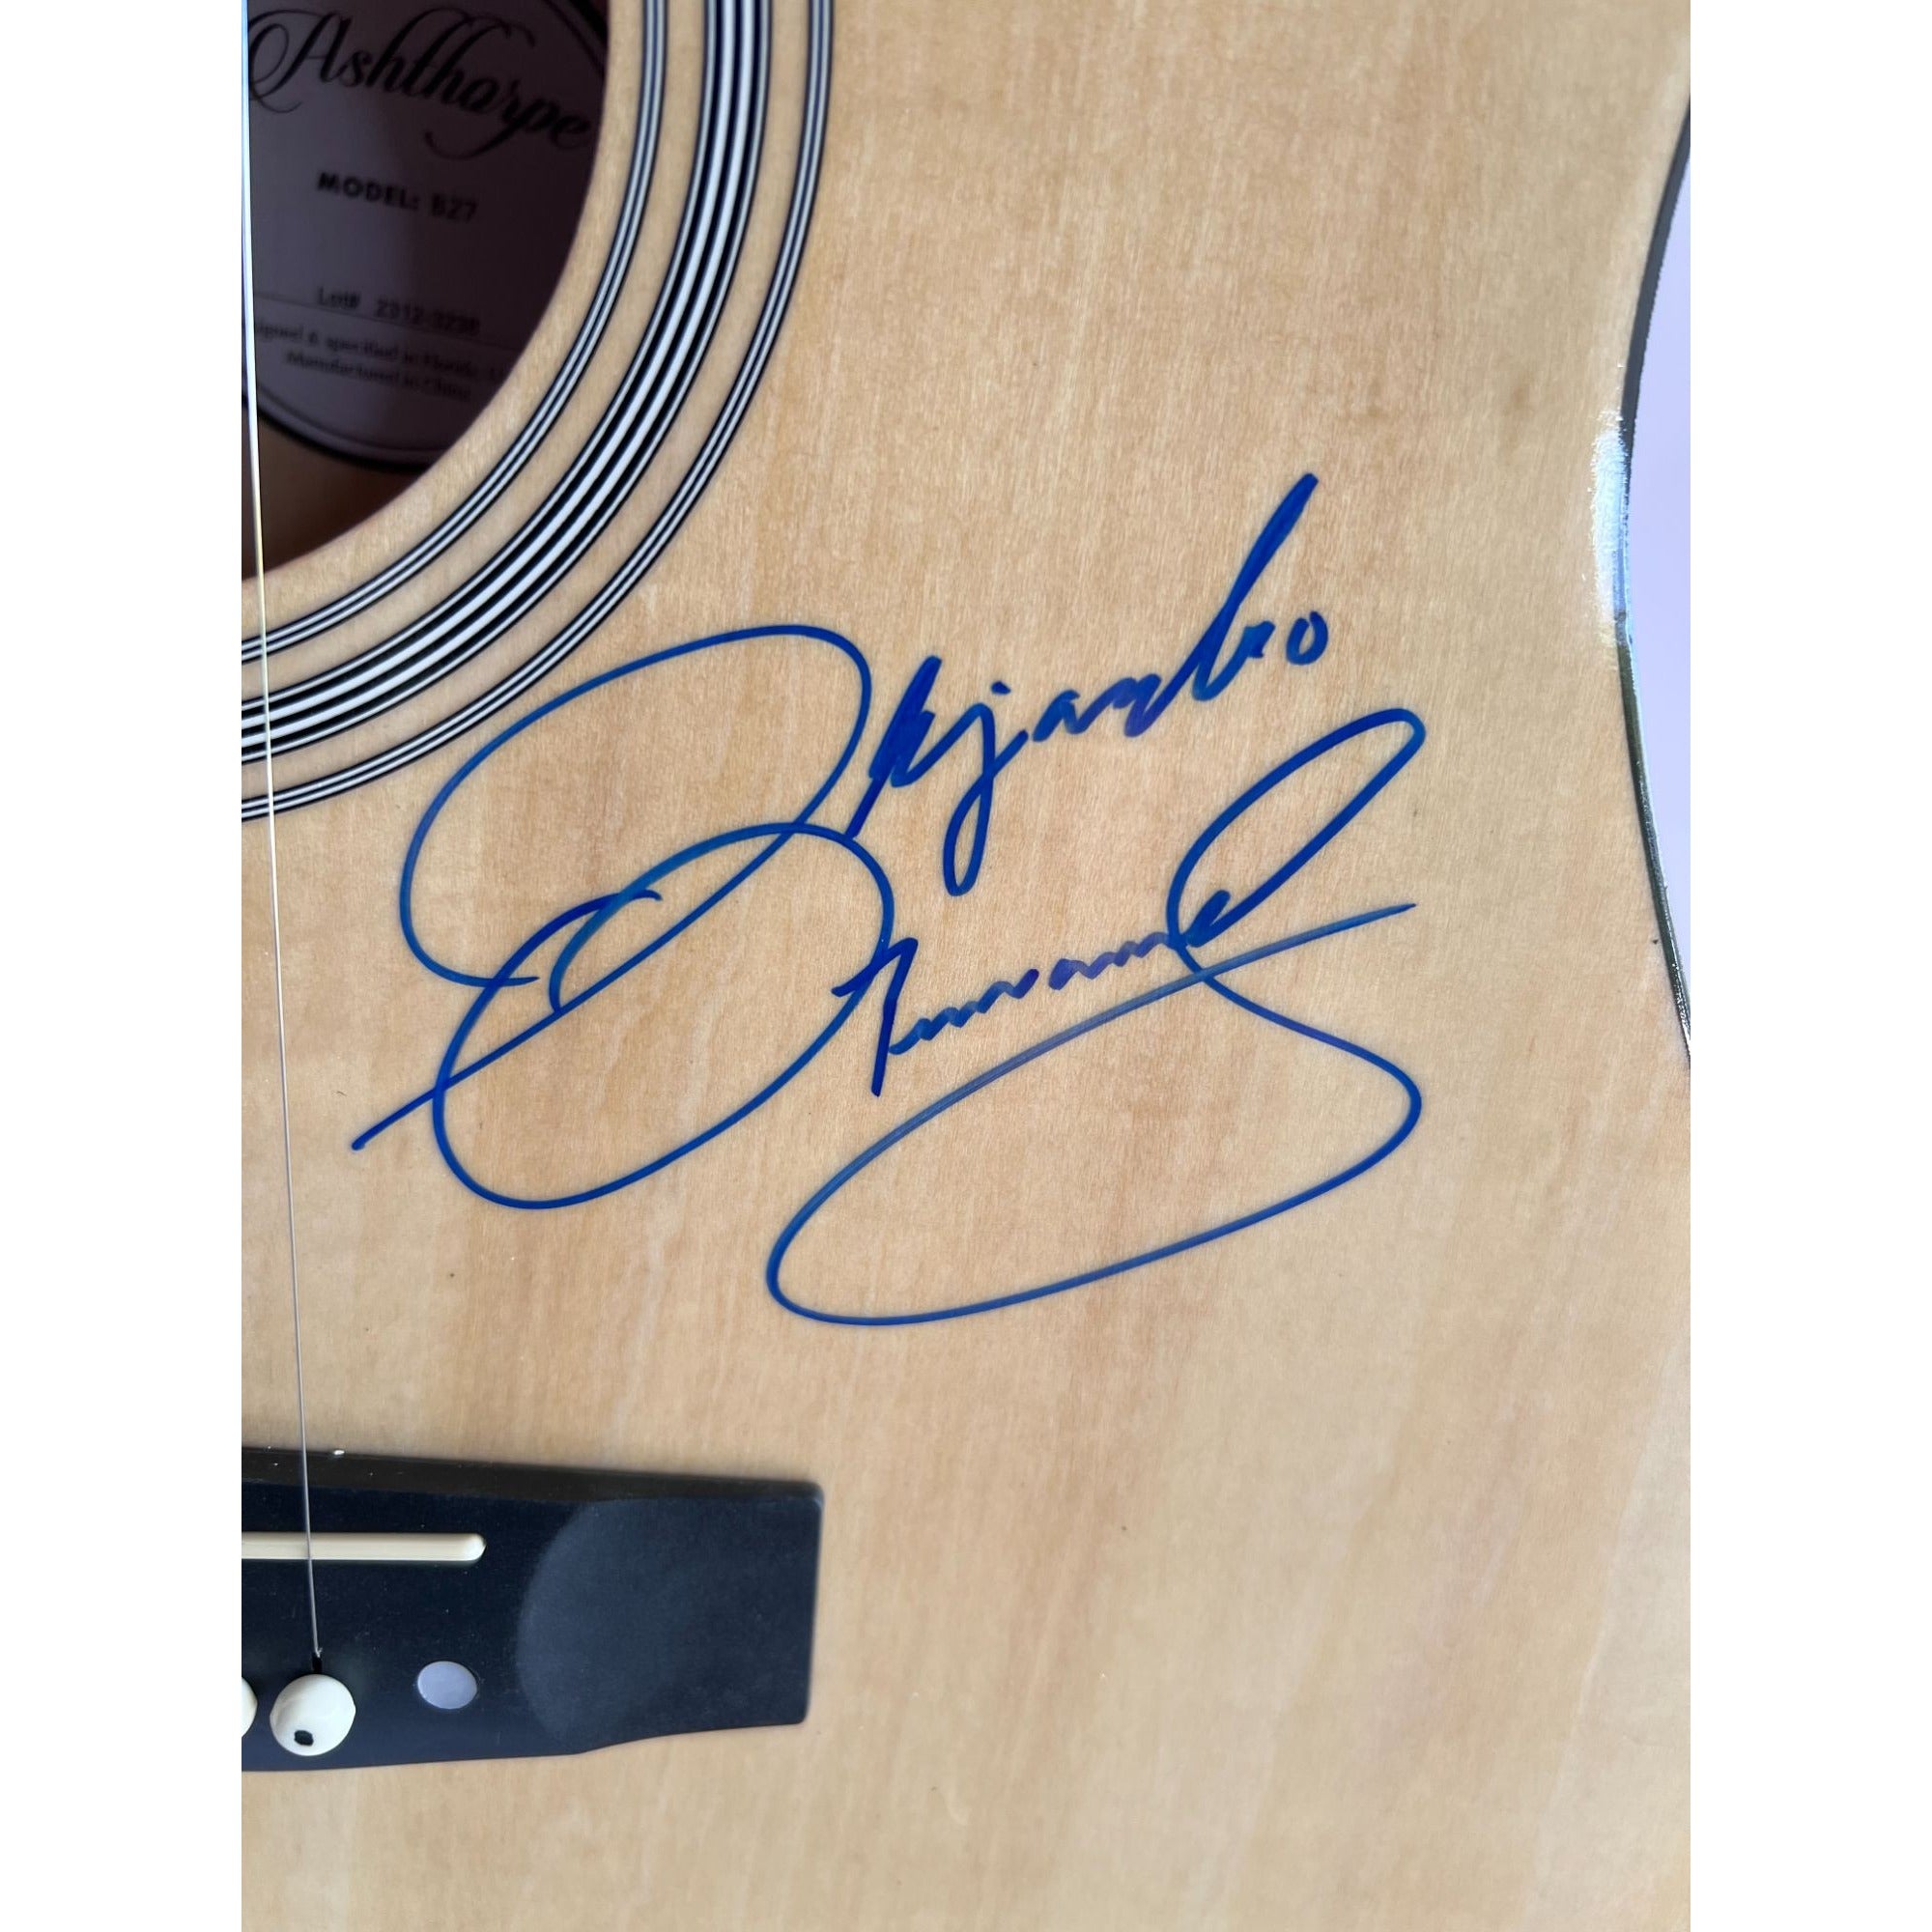 Vicente Fernandez Alejandro Fernandez full size Ashharpe acoustic guitar signed with proof